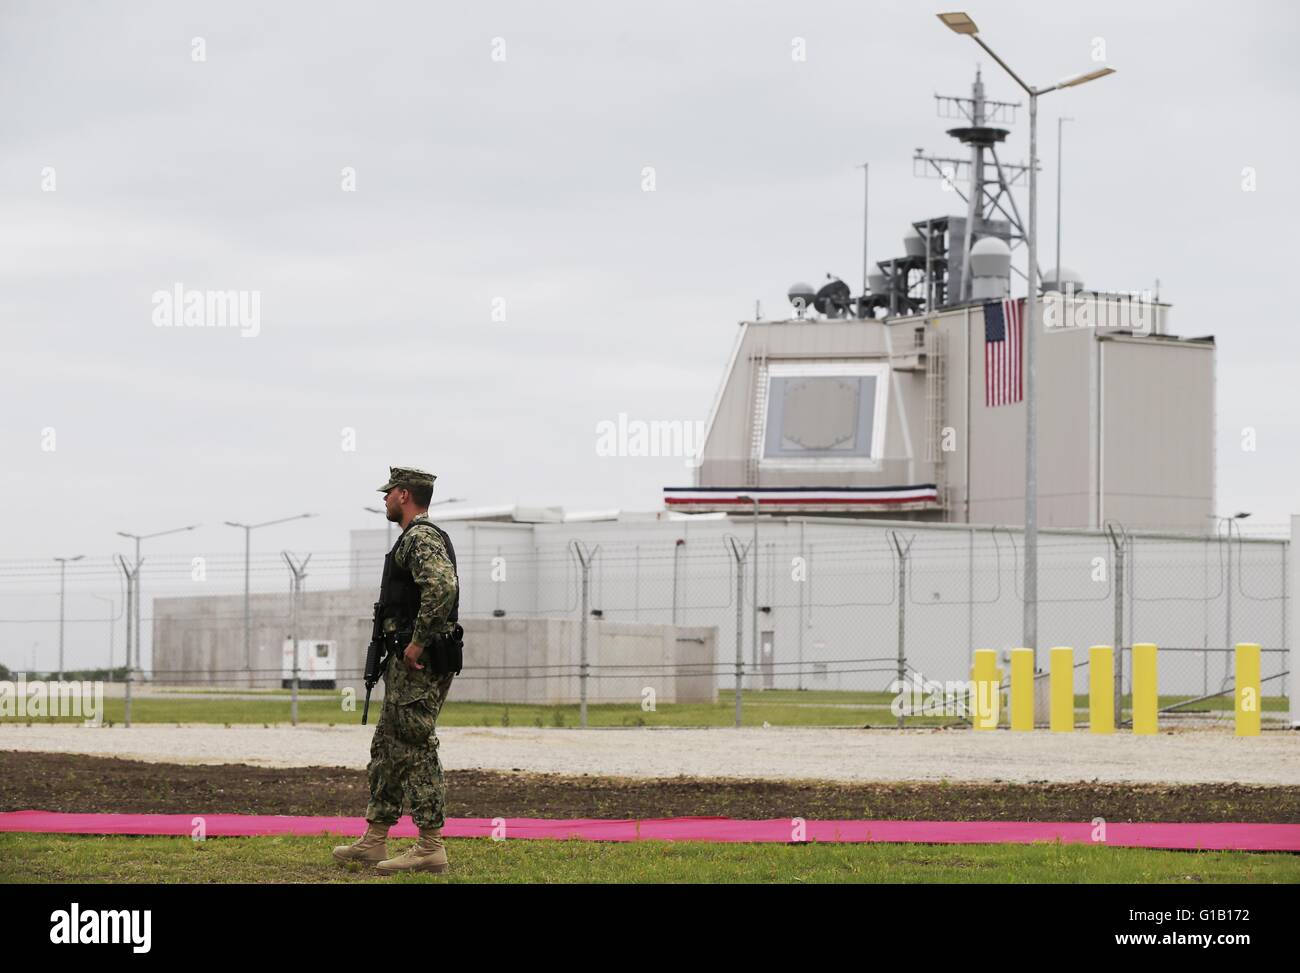 Un soldato americano sta di fronte alla prima base da parte della NATO scudo in Deveselu, Romania, 12 maggio 2016. Il sistema Aegis sviluppato dalla US Navy è basato su questa posizione. Foto: KAY NIETFELD/dpa Foto Stock